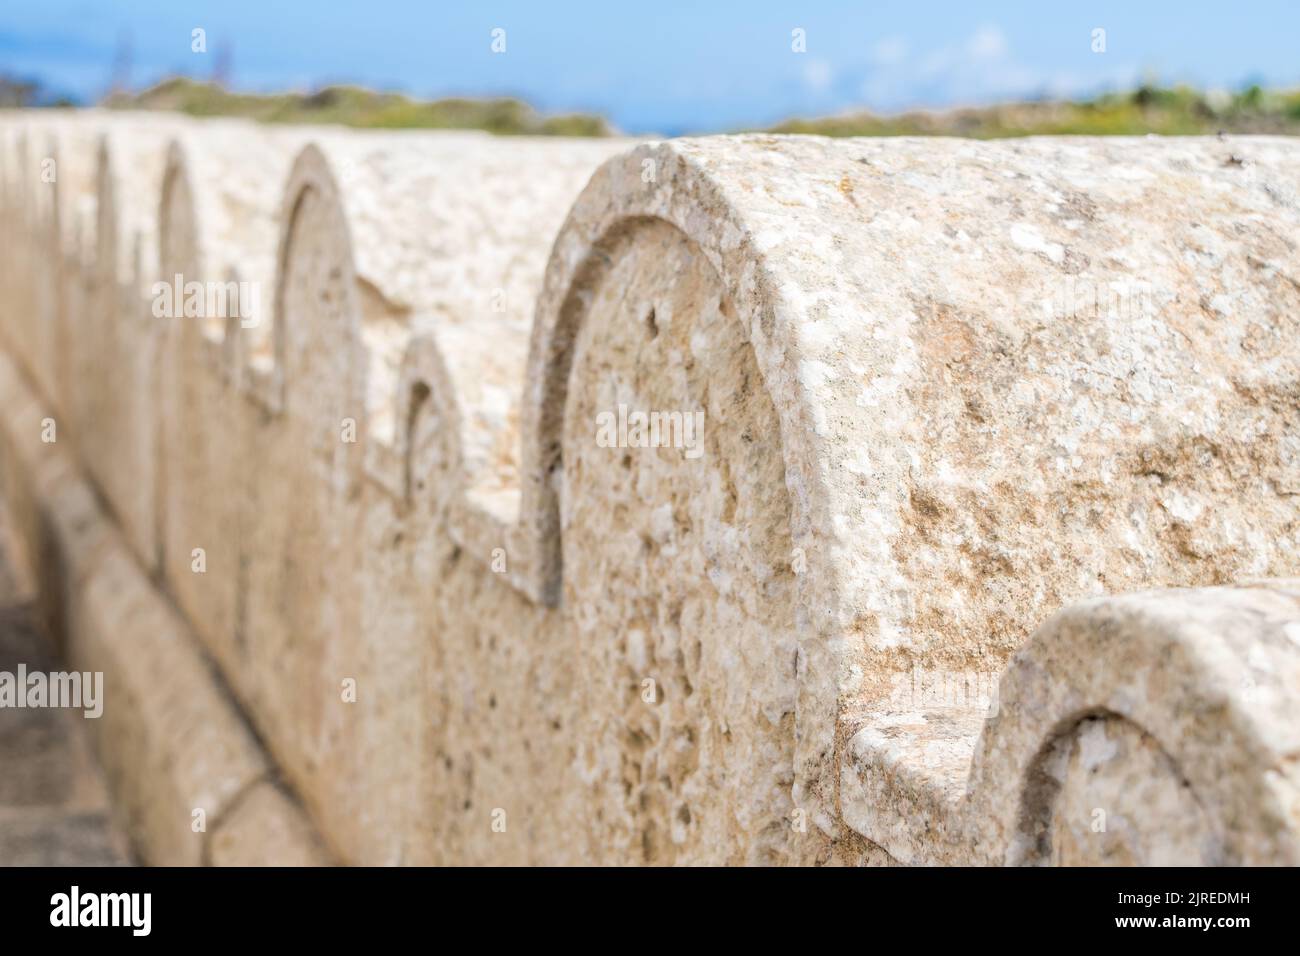 Ein Kalksteinzaun oder eine Grenze, die mit kleinen und großen Steinbögen um die St. Dimitri-Kapelle im ländlichen Dorf Gharb, Gozo, Malta, geschmückt ist Stockfoto